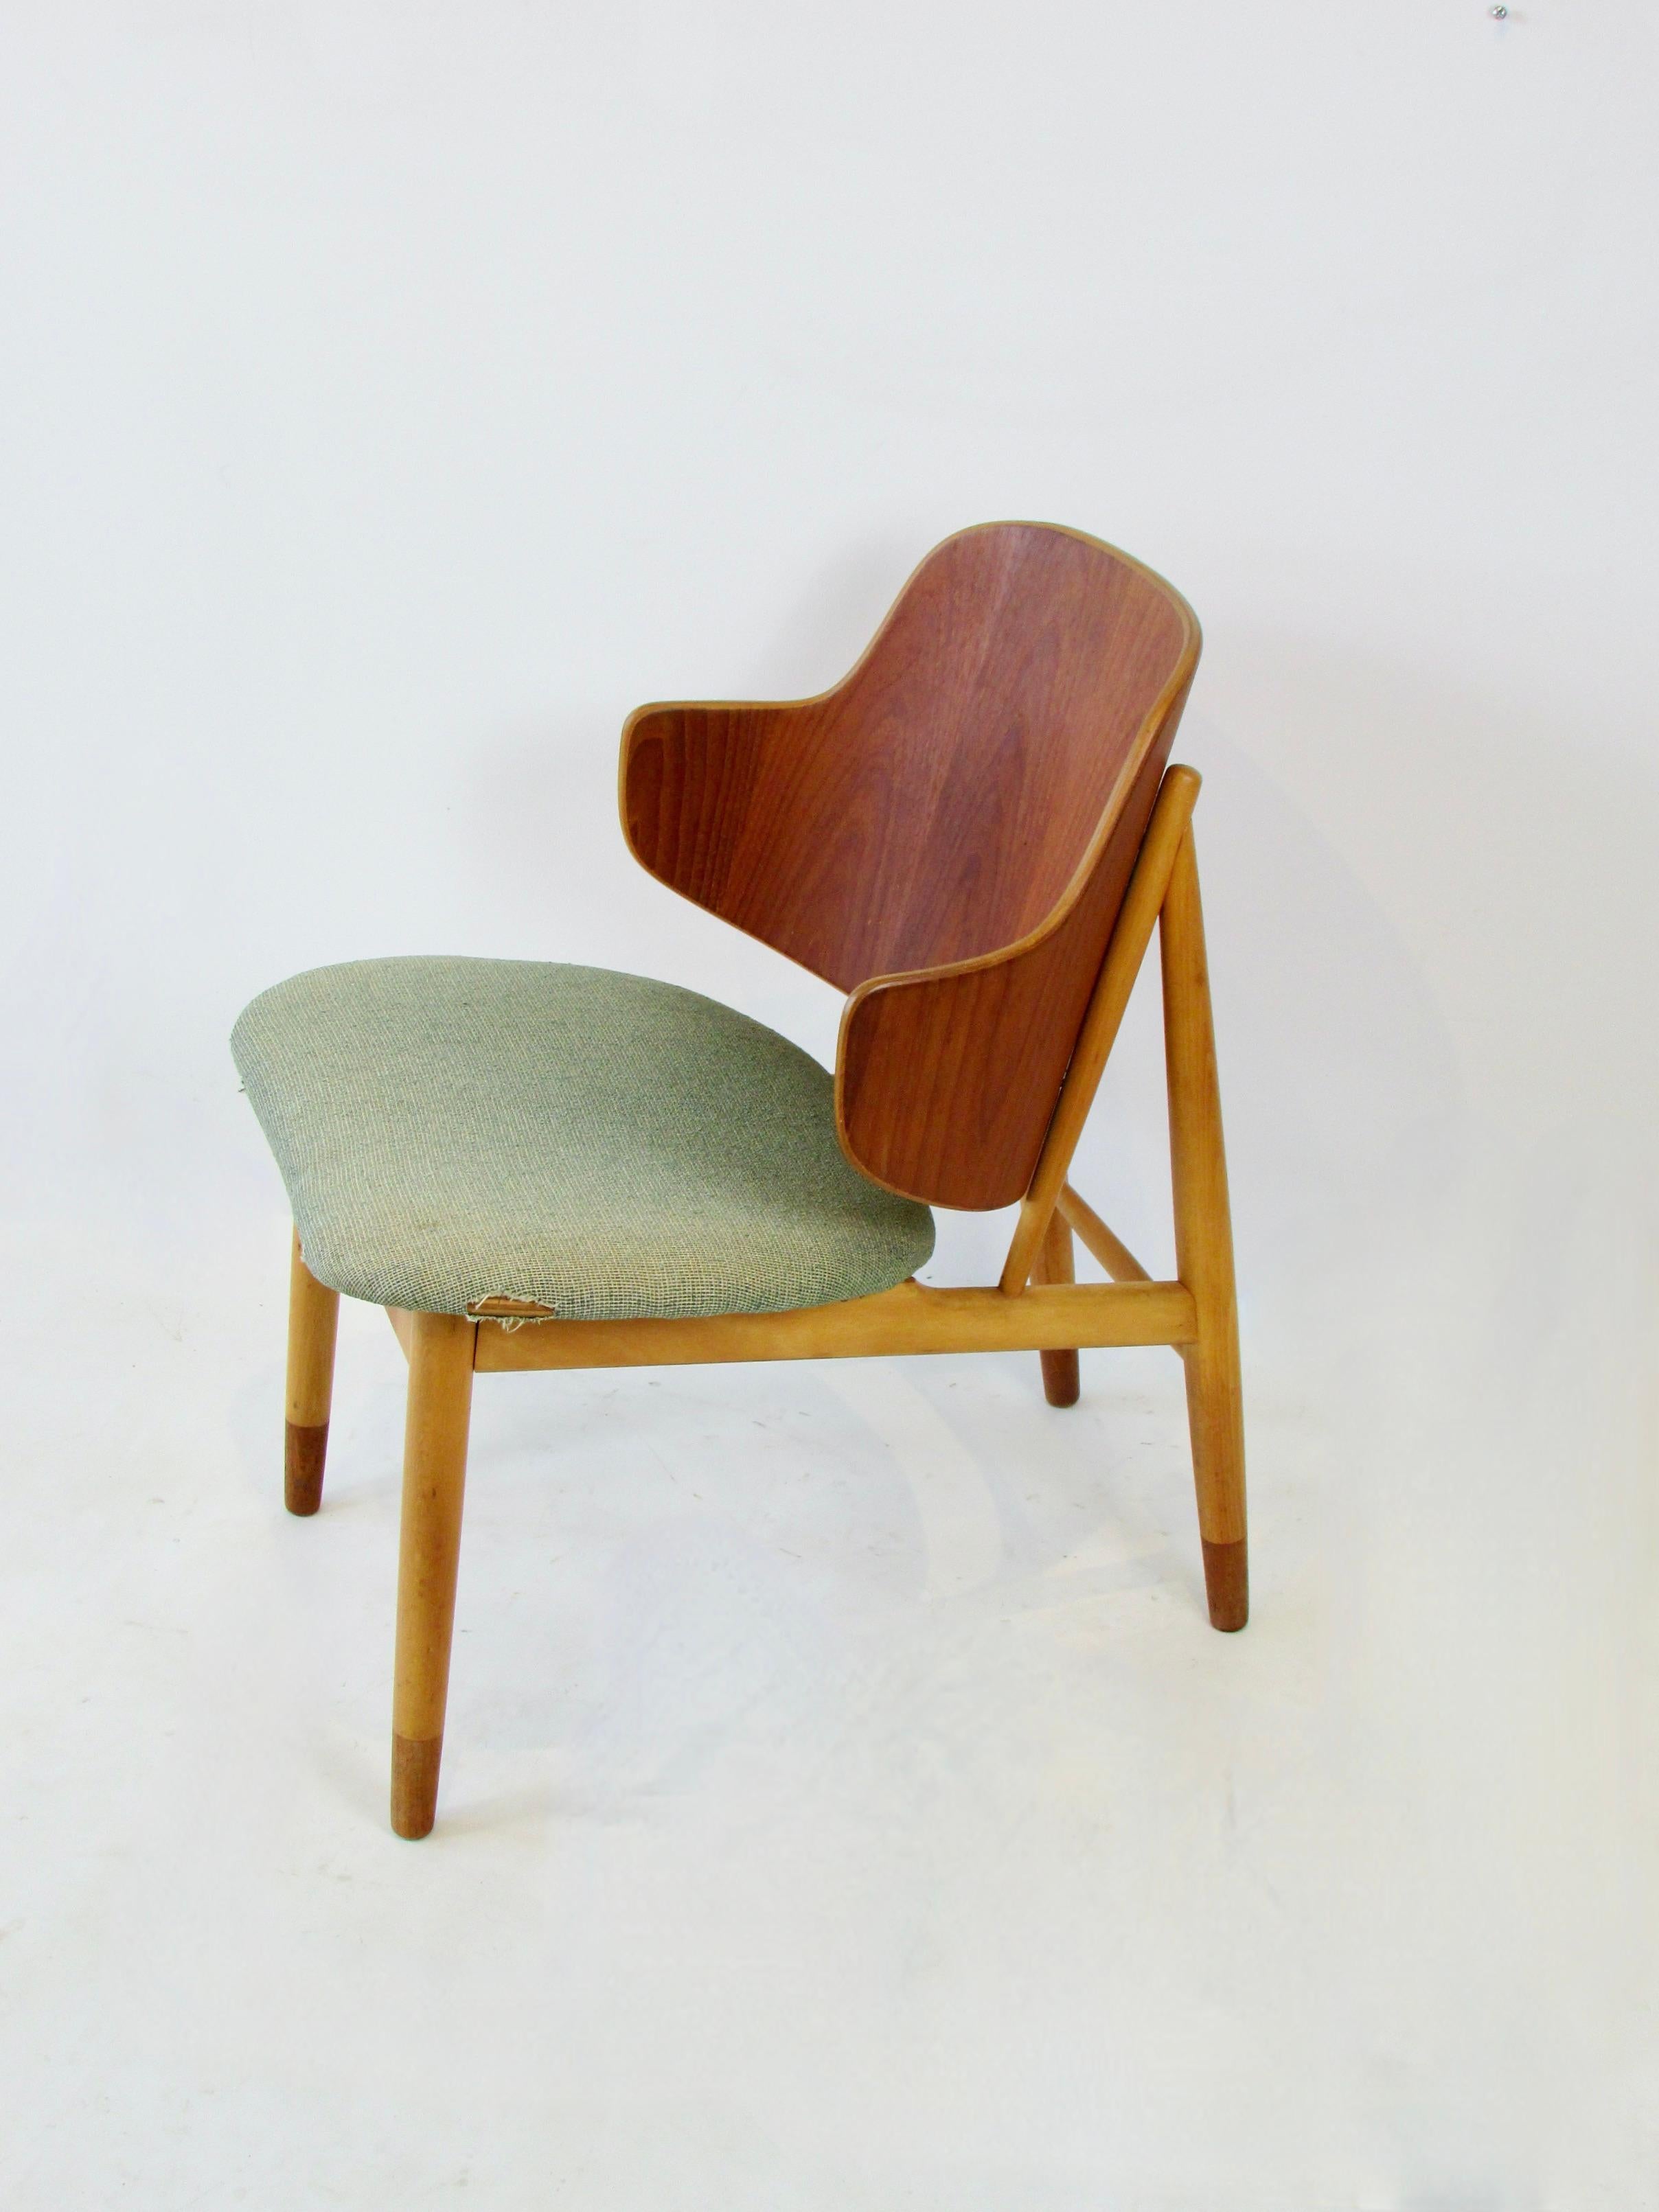 20th Century Ib Kofod-Larsen Penguin chair for Christiansen and Larsen Denmark 1955 For Sale